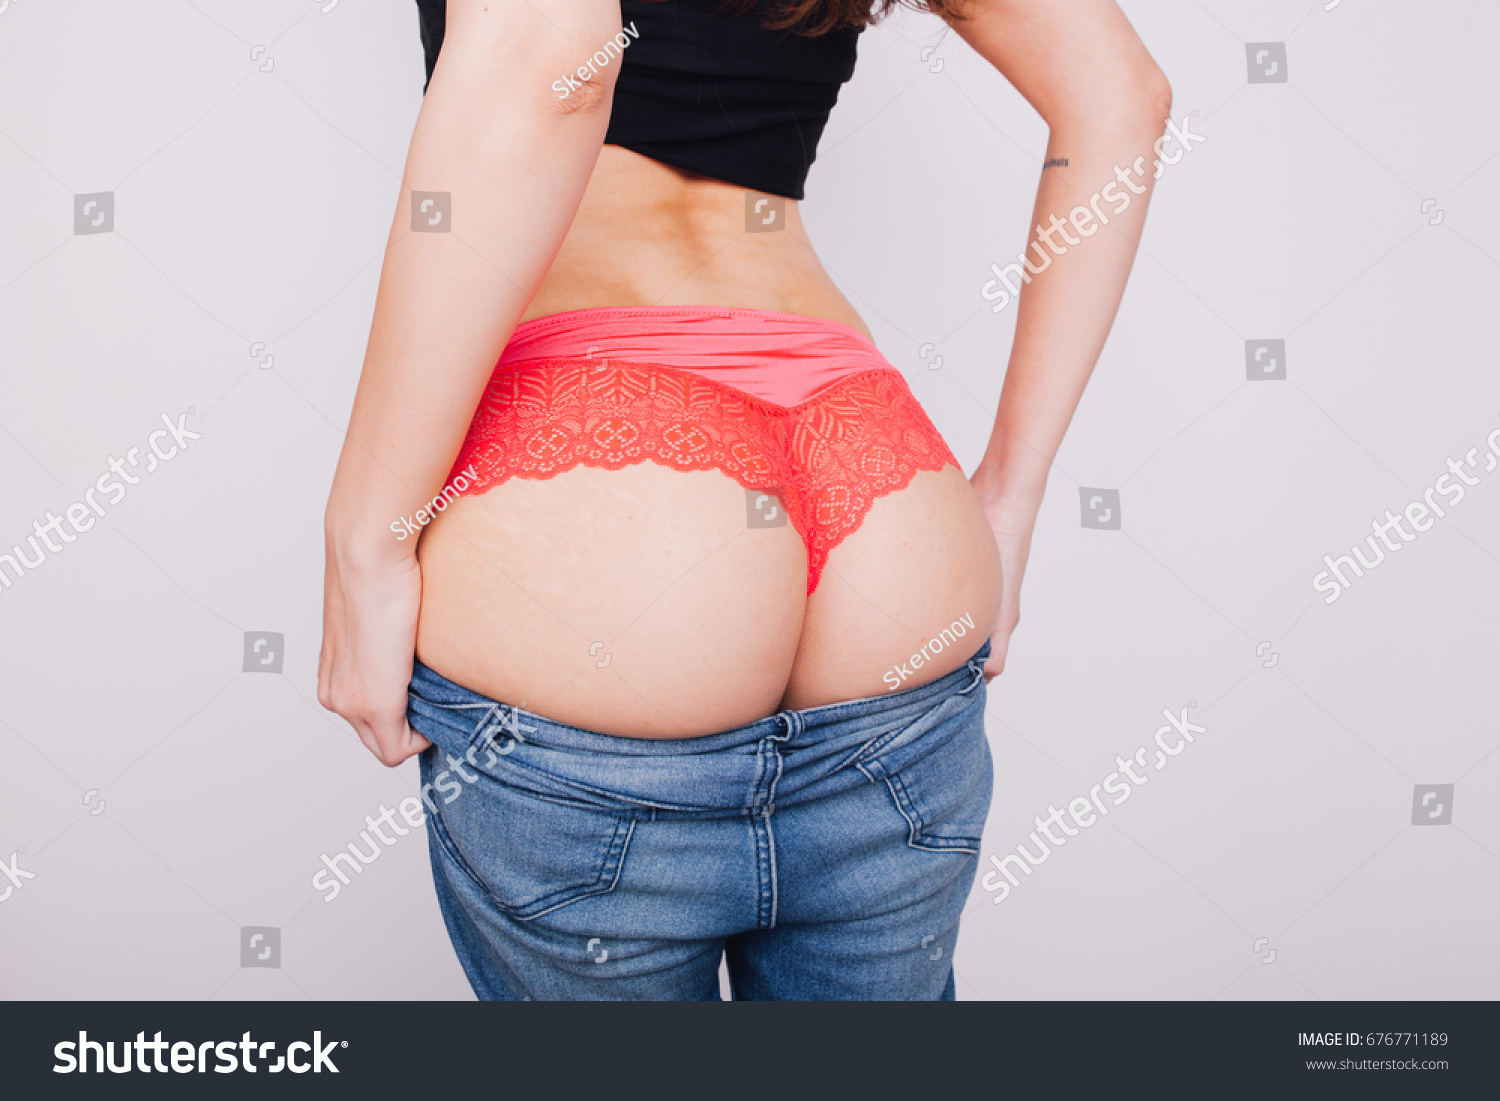 Thick Ass Girls Pics